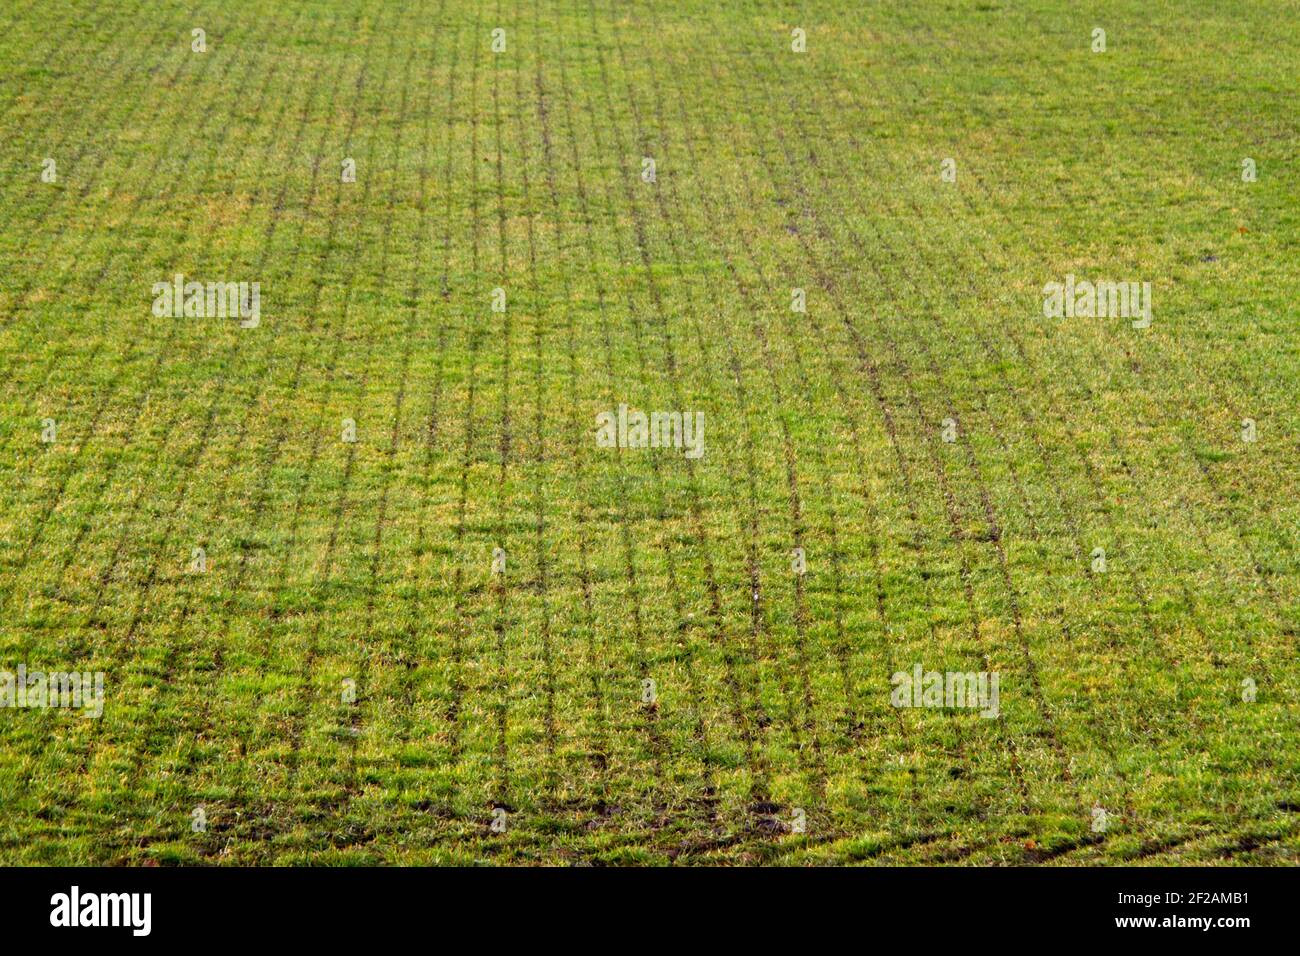 Moderne Landwirtschaft: sod mit geraden Schnitten nach Einspritzung von Gülle in Grünland Stockfoto